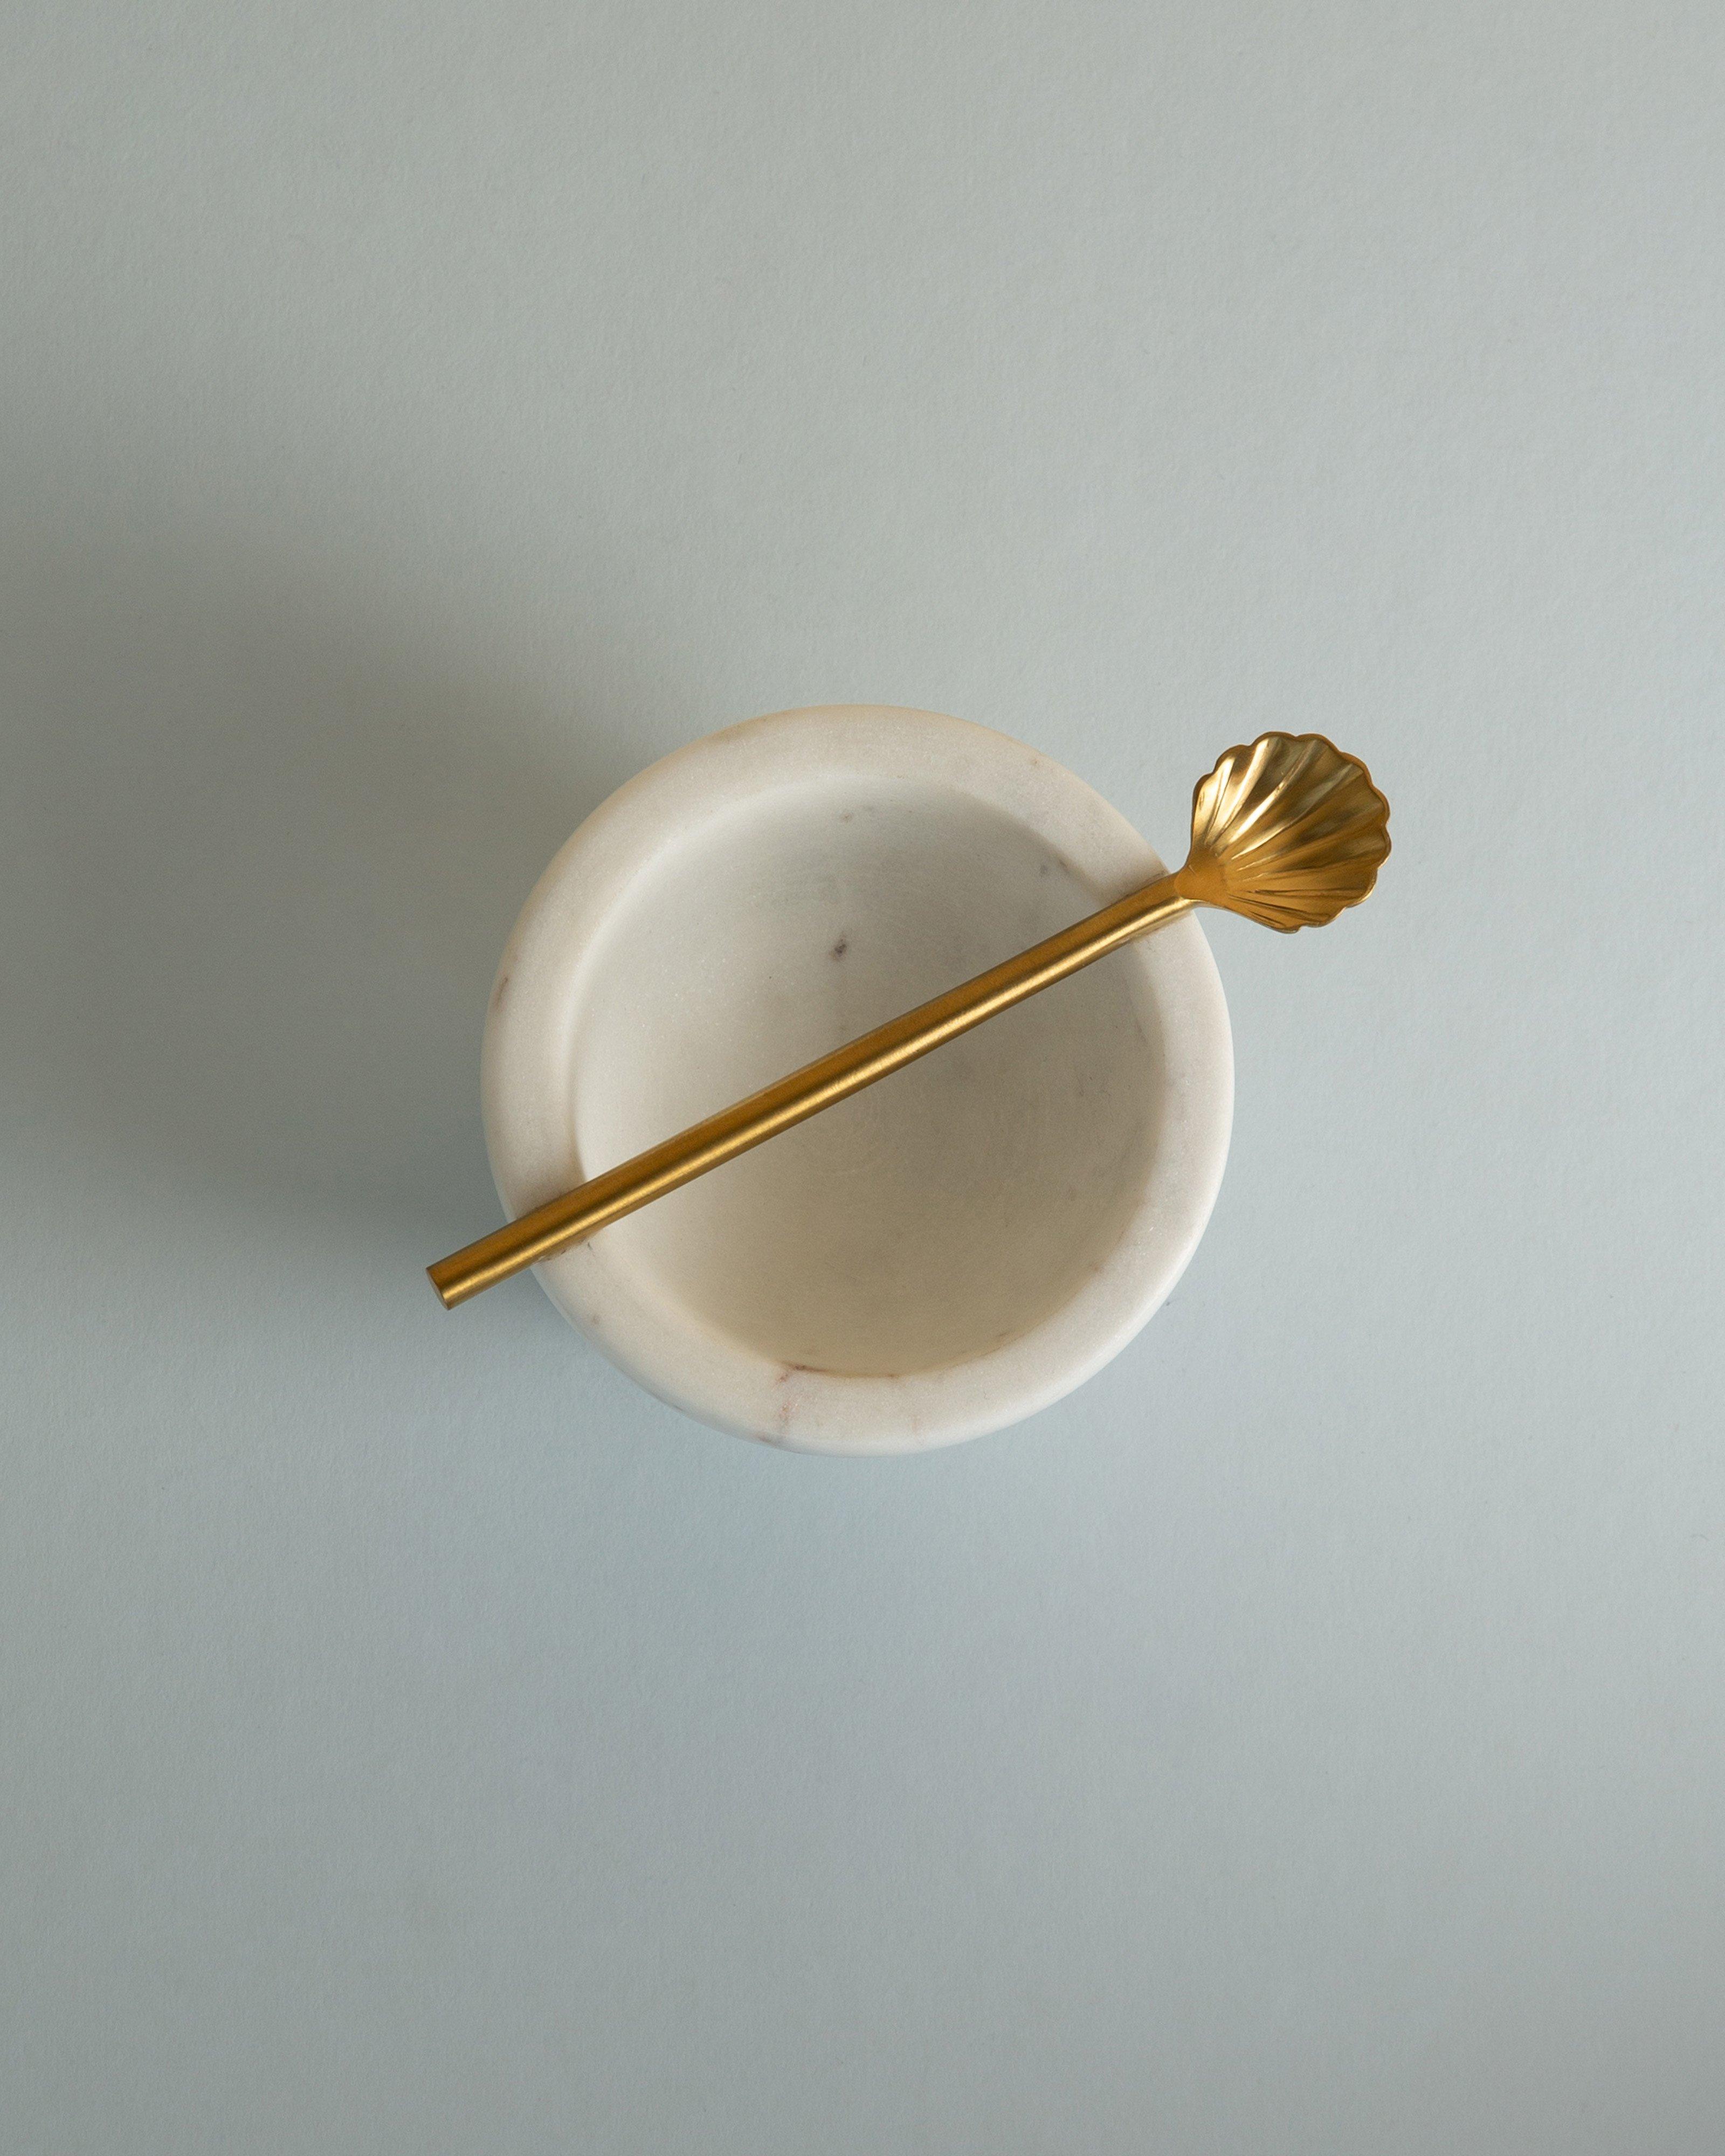 Marble Tapas Bowl with Spoon -  White